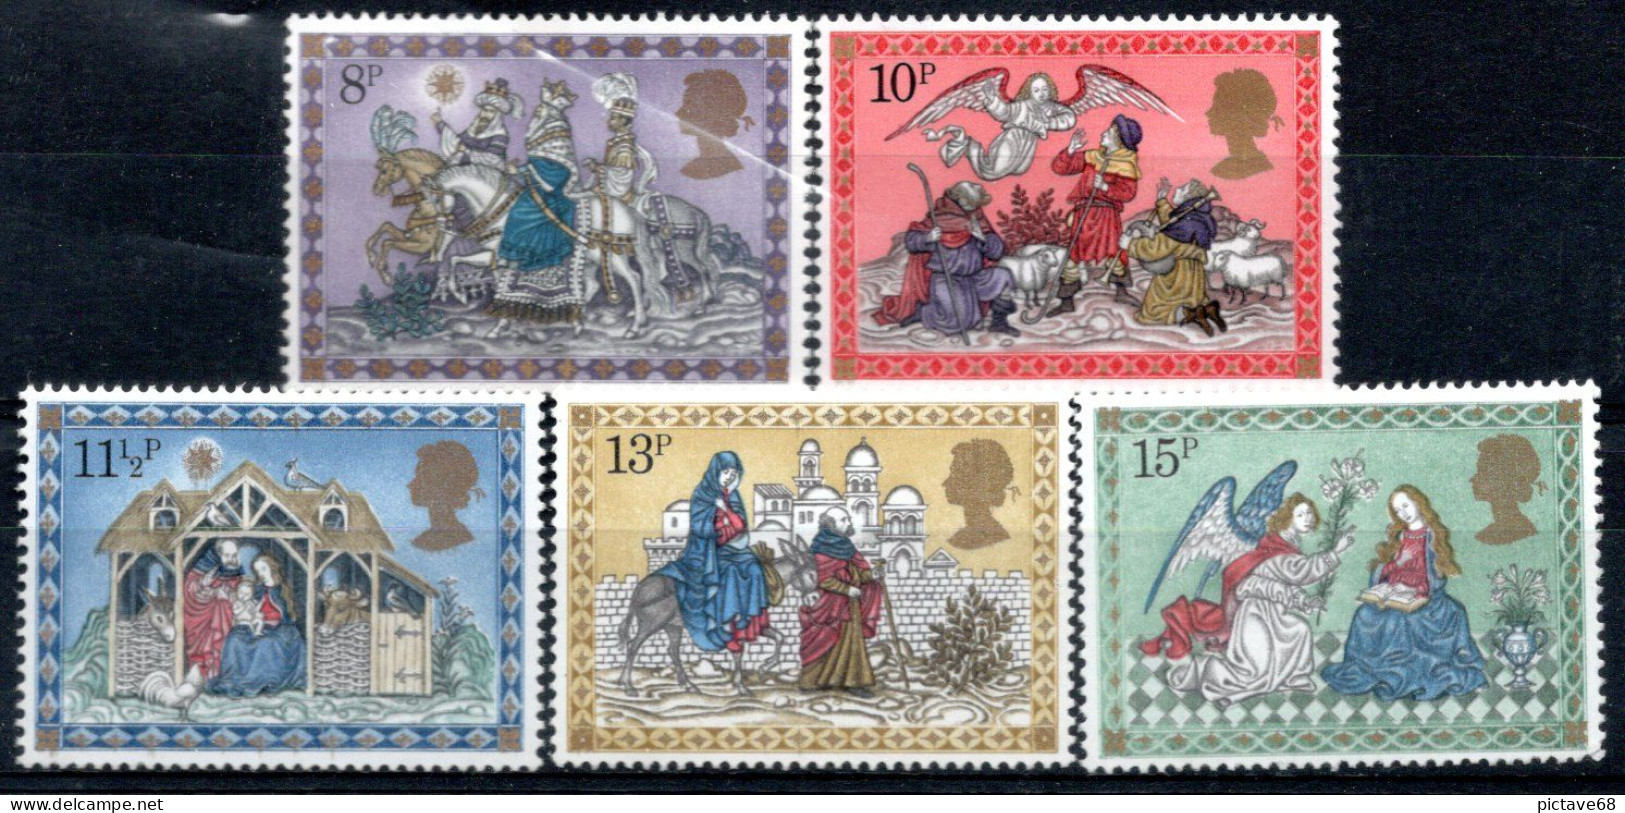 GRANDE BRETAGNE / N° 917 à 921 NEUFS * * - Unused Stamps